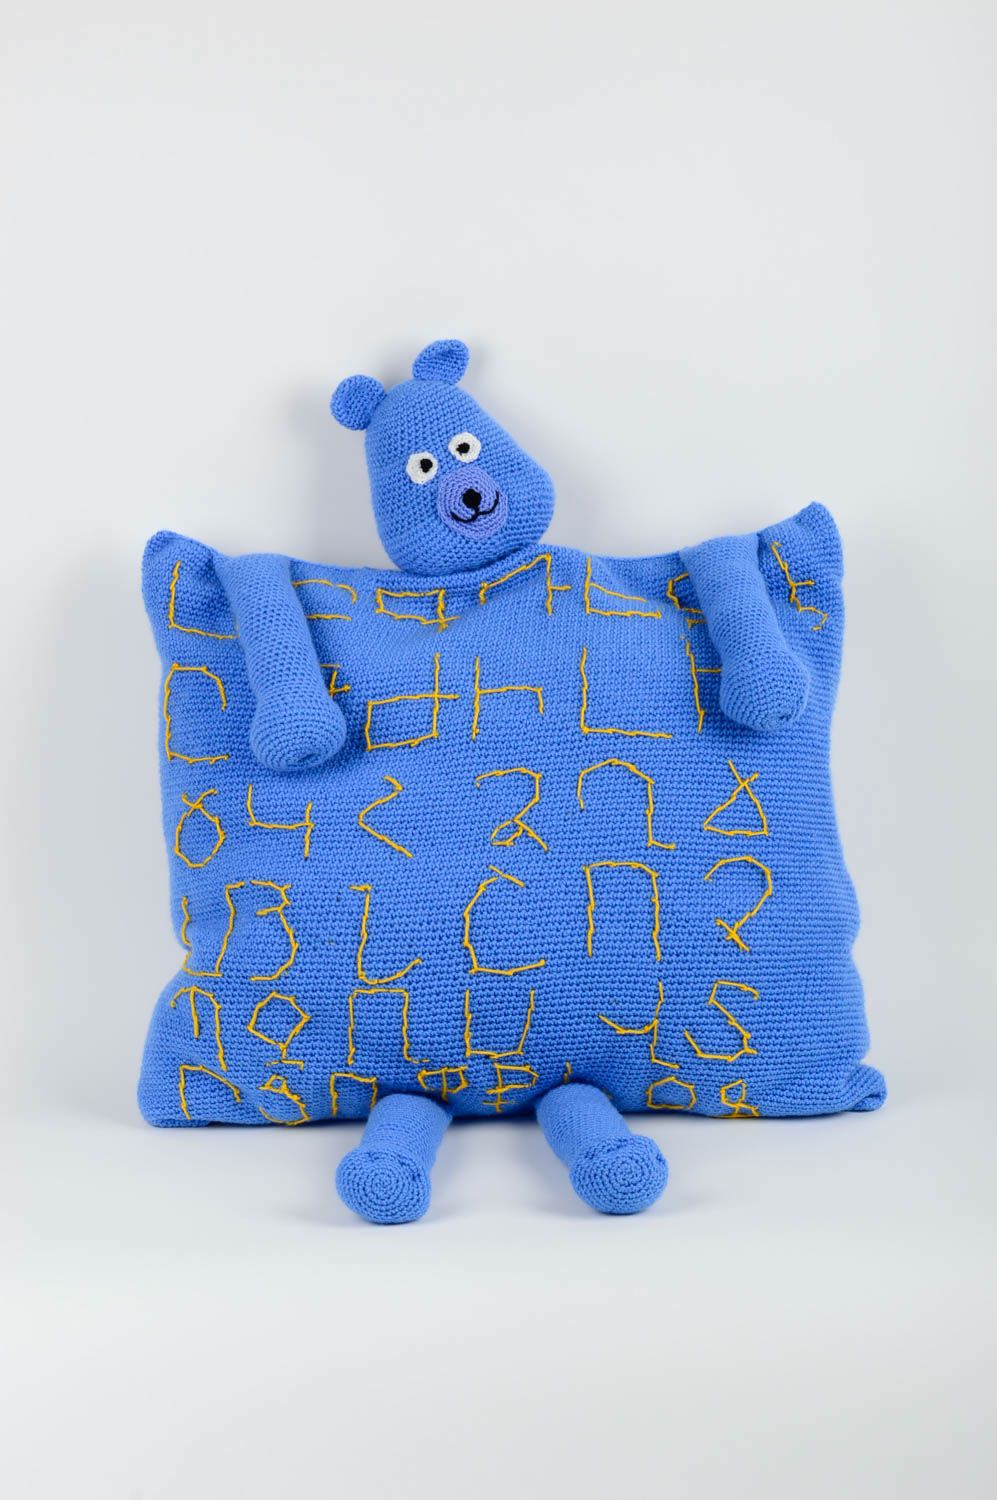 Вязаная подушка ручной работы вязаная подушка медведь синяя подушка игрушка фото 1